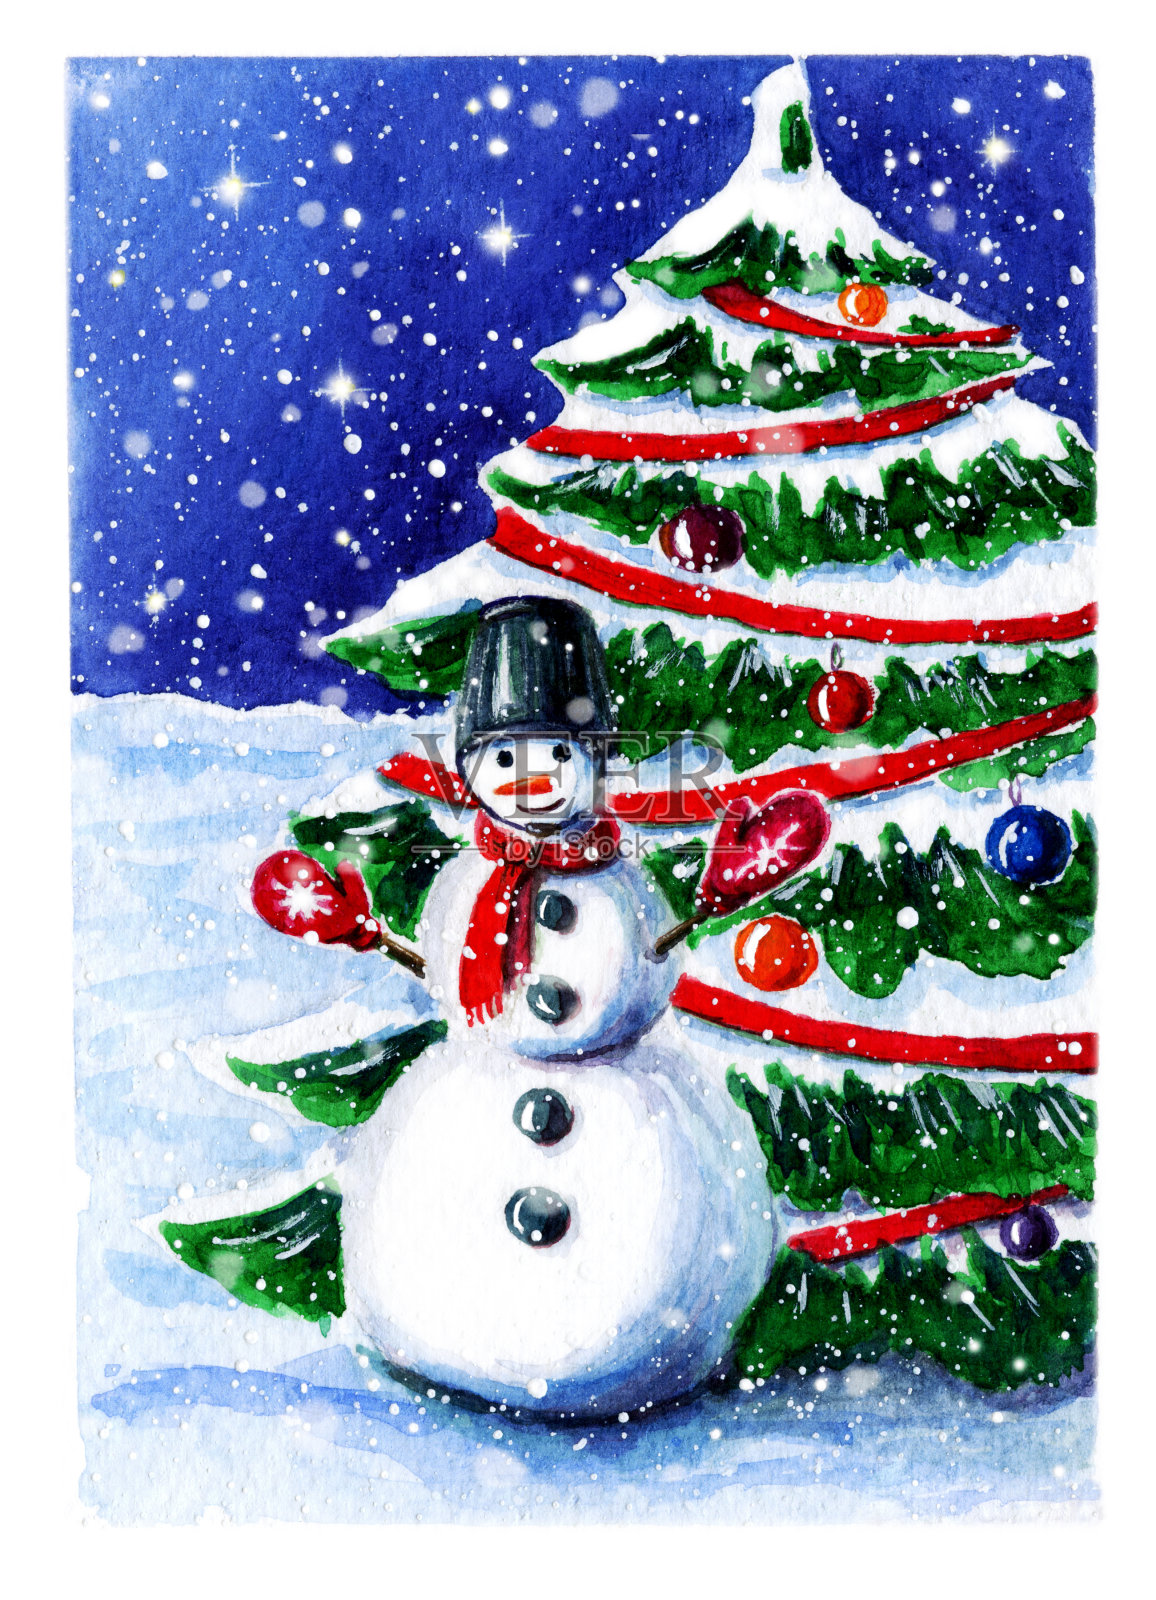 水彩画的冬天场景与雪人和雪花。可爱的季节景观与微笑的雪人附近云杉圣诞树。圣诞贺卡模板，圣诞横幅，寒假海报插画图片素材